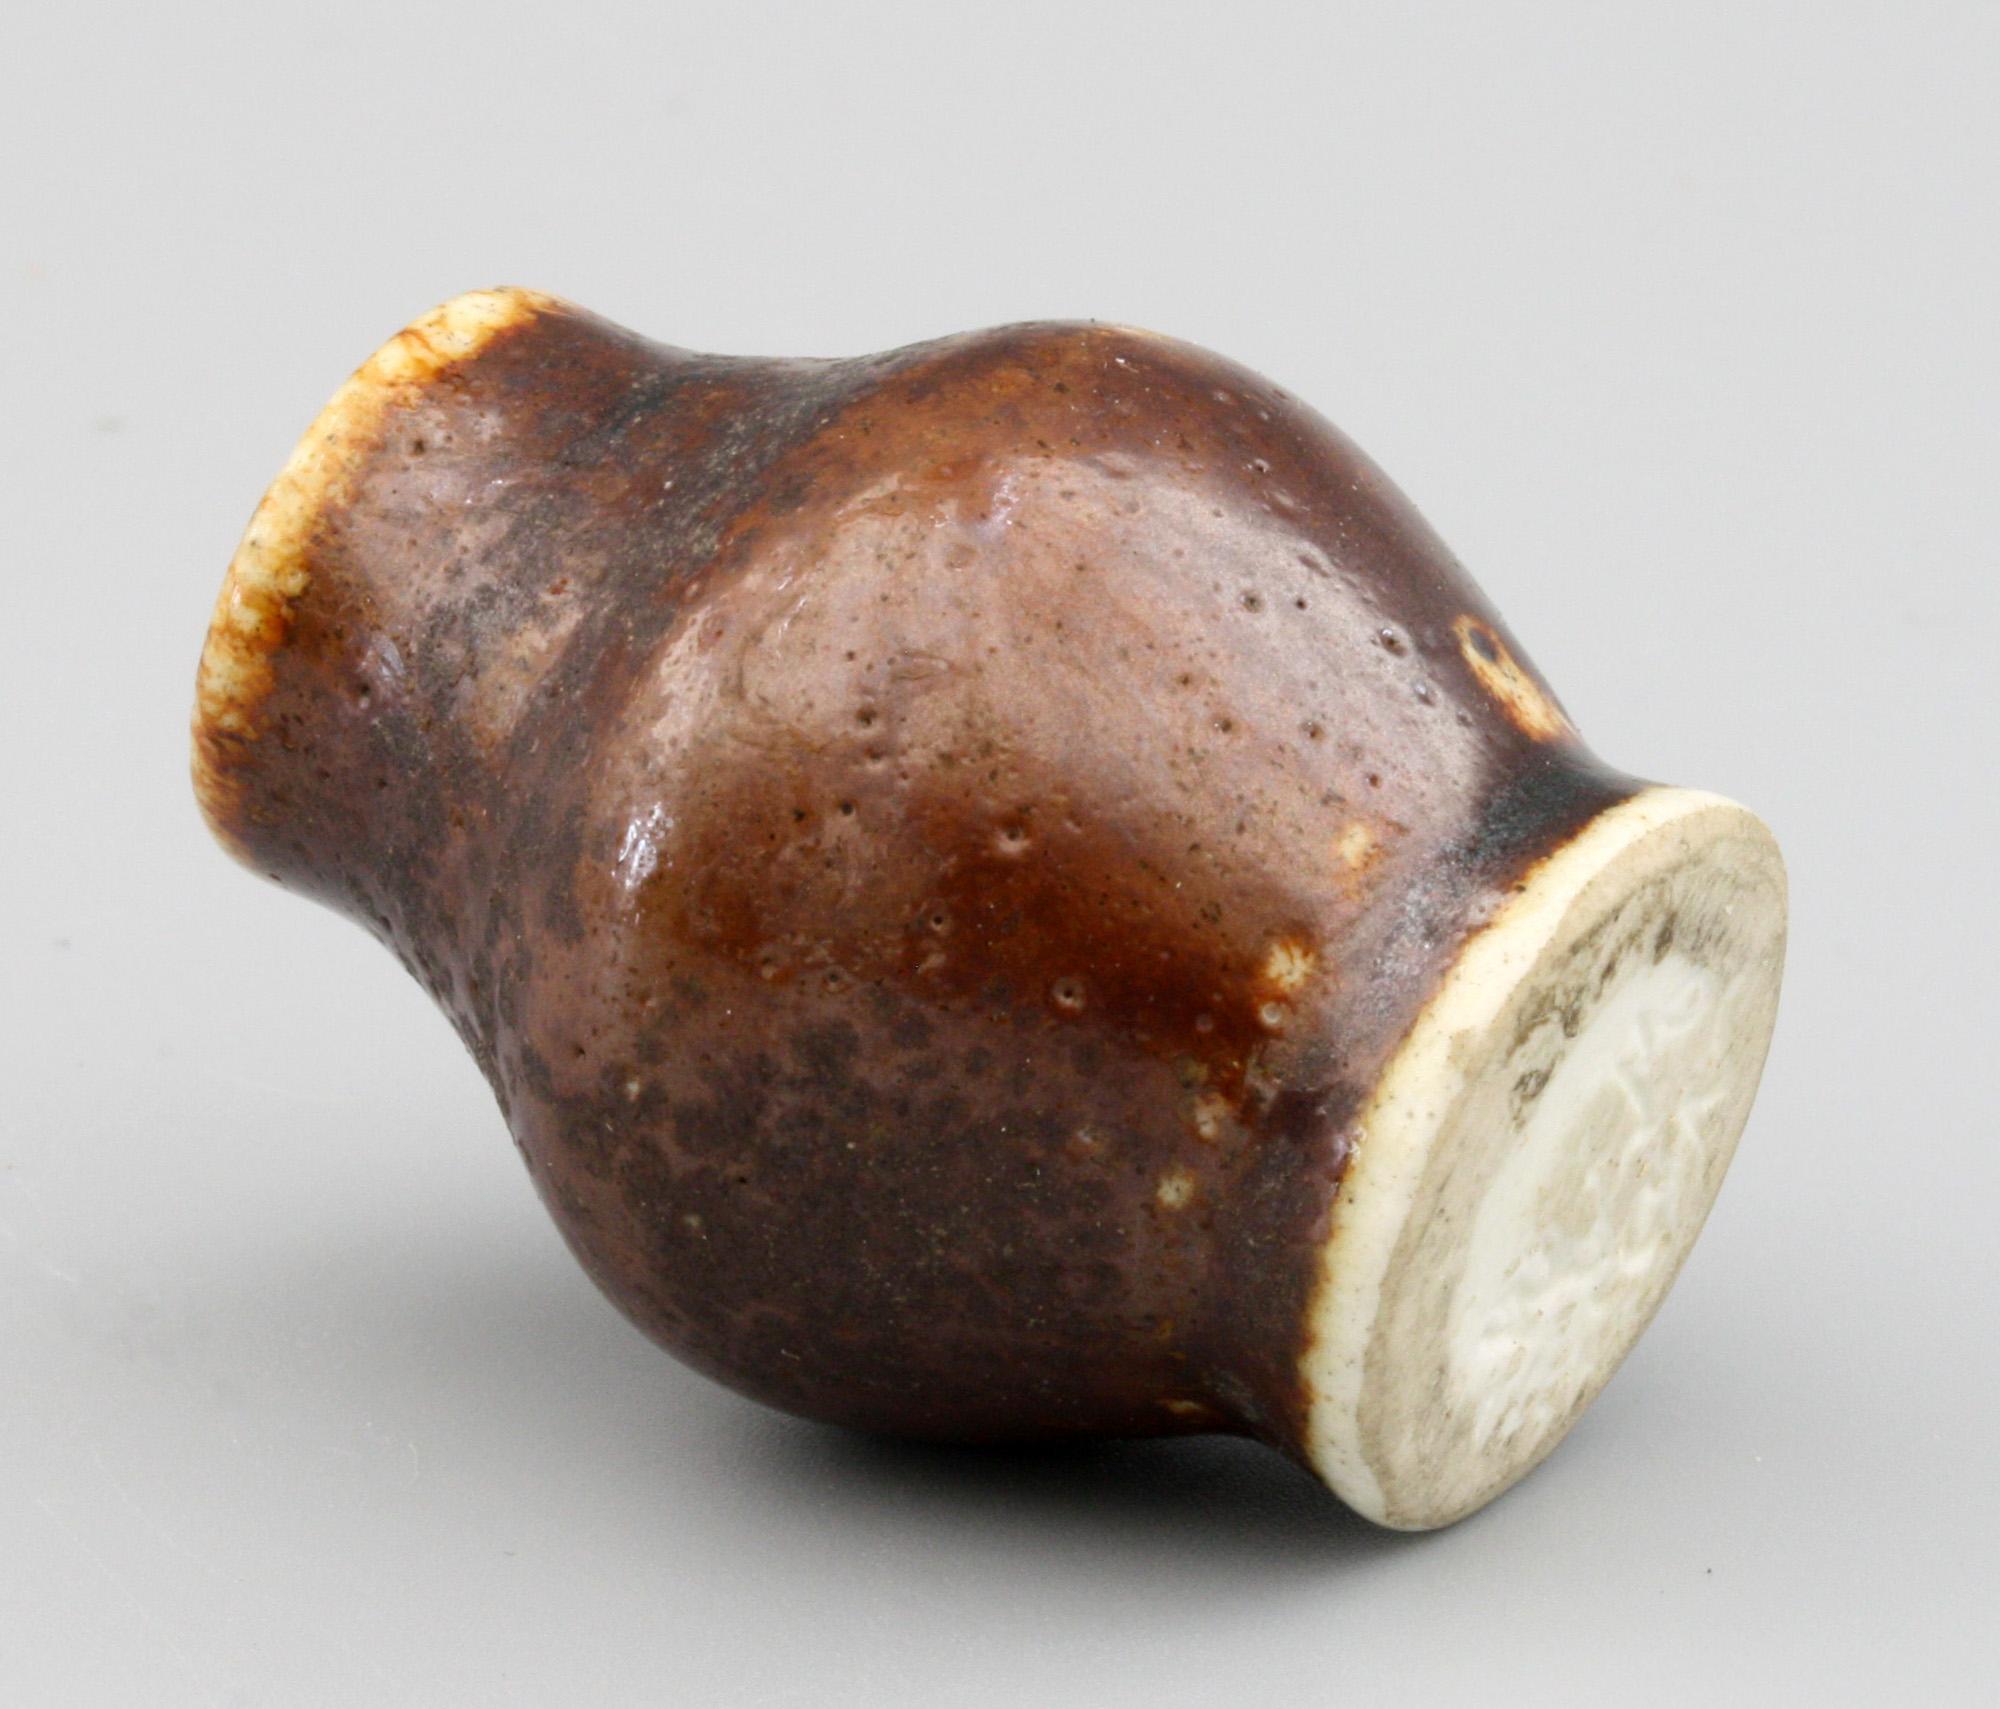 Eine seltene Vase der Gebrüder Martin aus Steingut mit brauner Glasur von Walter Martin, vermutlich aus dem 19. Diese hübsche kleine Vase ist rundlich bauchig mit einem schmalen runden Fuß und einem trichterförmigen Hals mit runder Öffnung. Die Vase